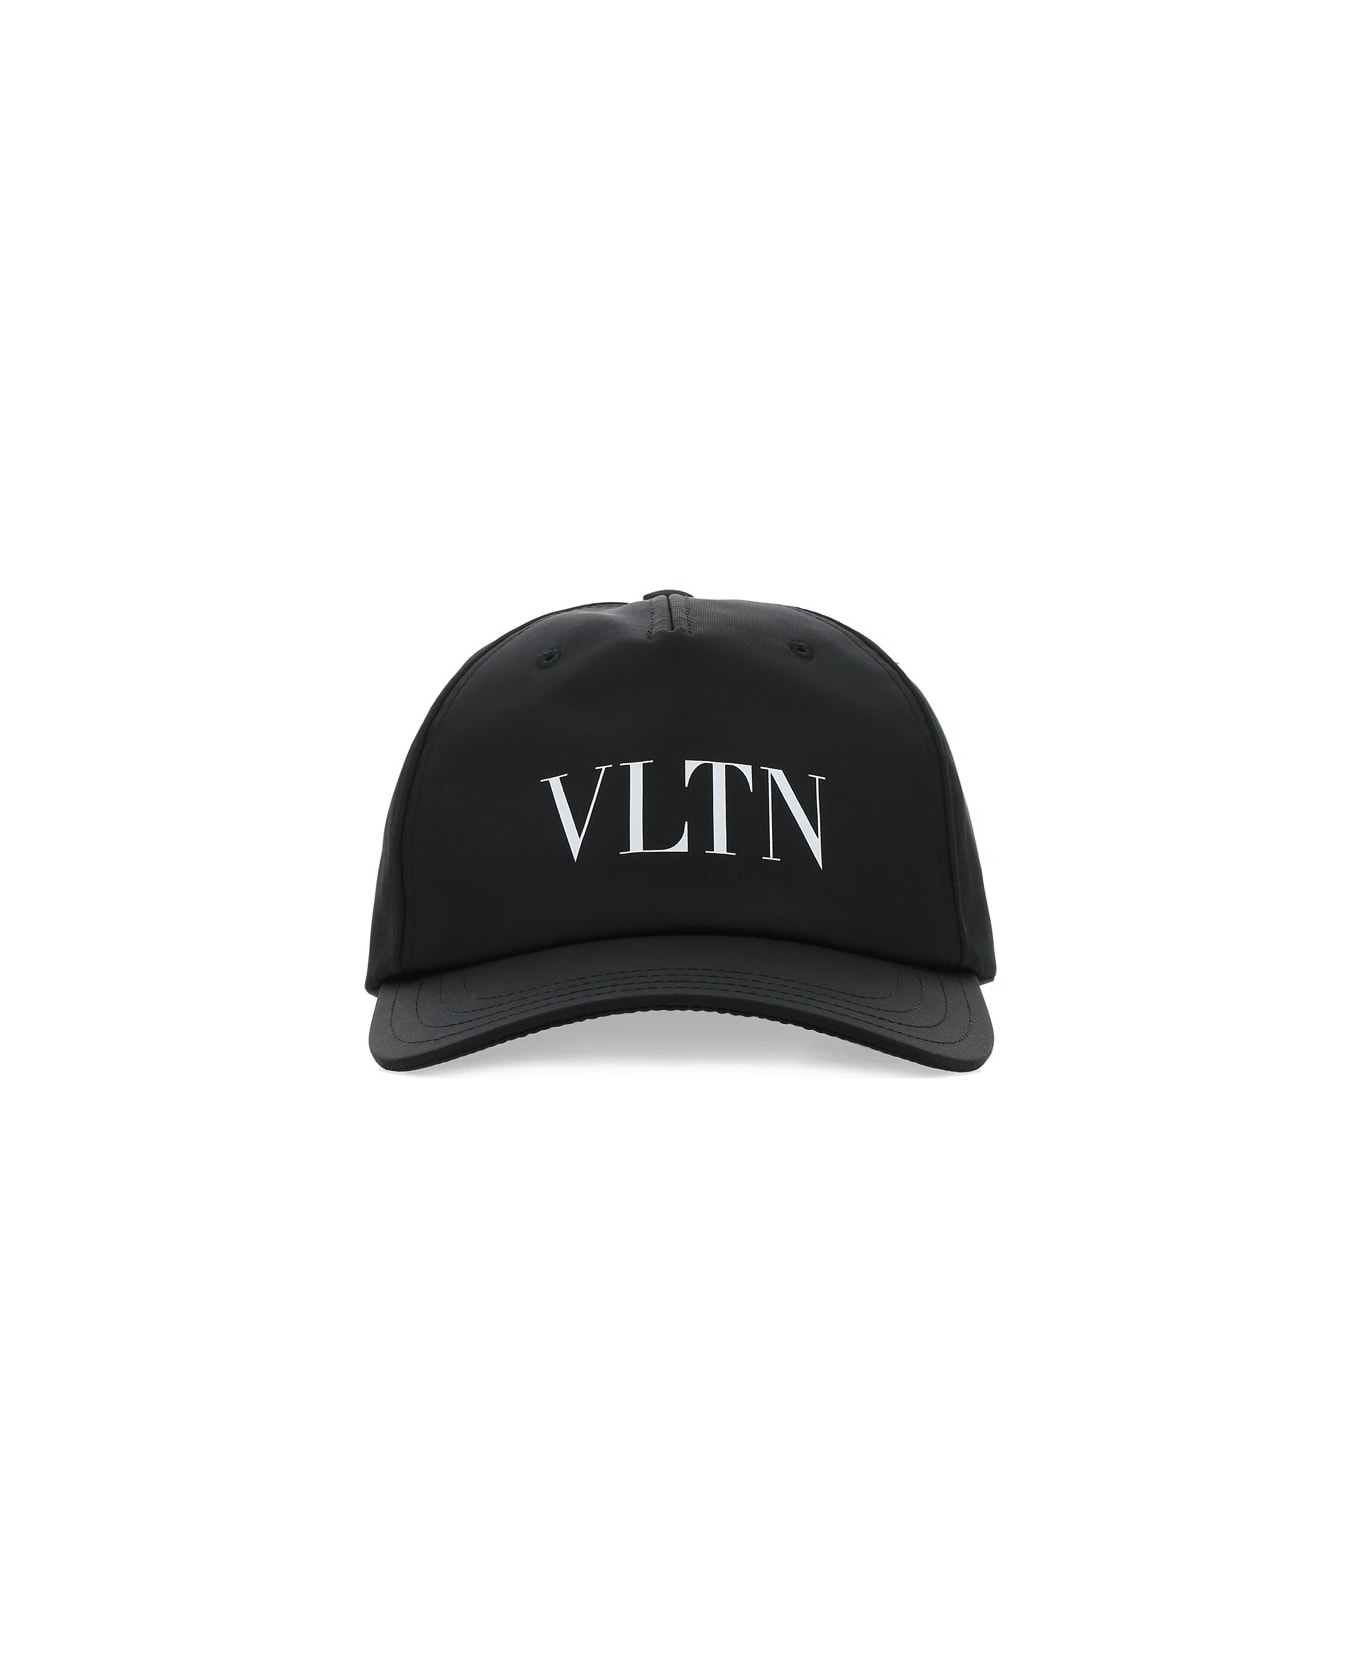 Valentino Garavani Black Nylon Baseball Cap - NERBIA 帽子